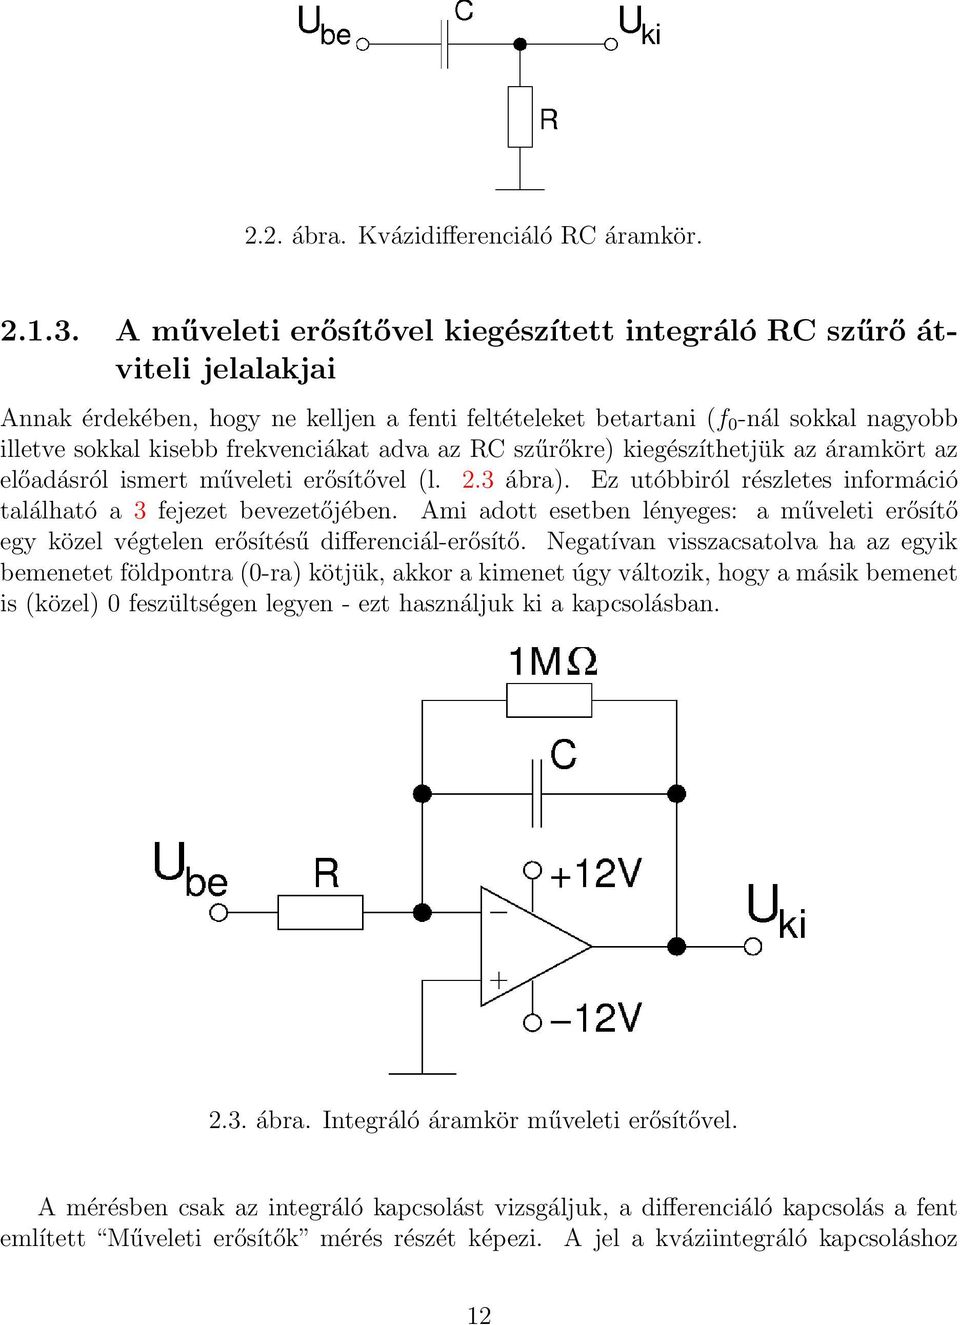 Elektronika és méréstechnika laboratórium jegyzet - PDF Free Download